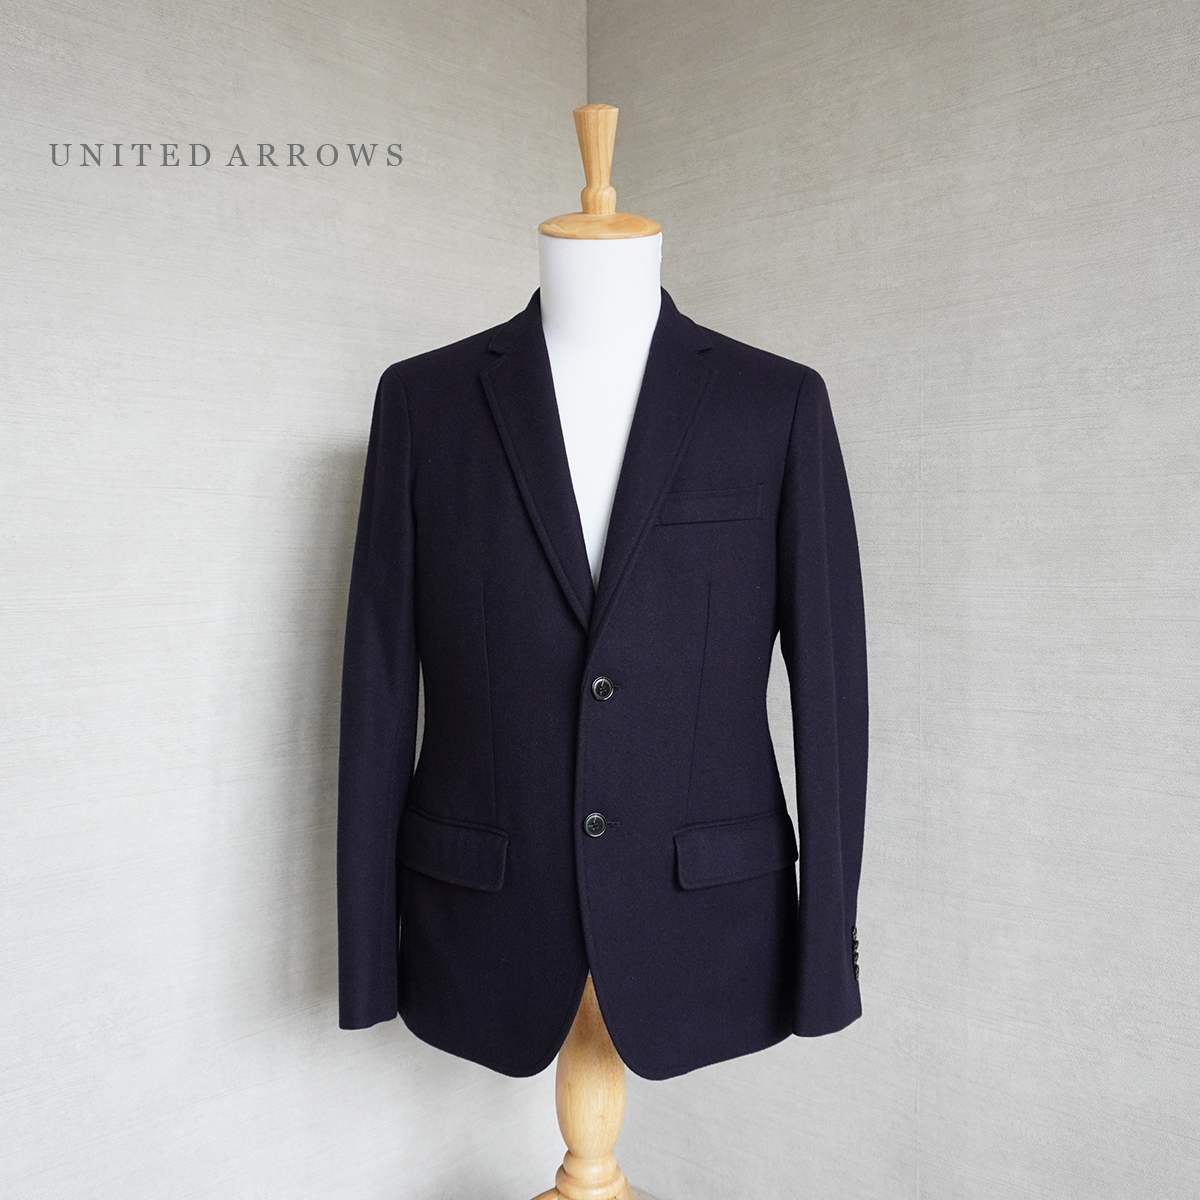 クリーニング済 美品 ユナイテッド アローズ UNITED ARROWS ウール テーラード ジャケット メンズ 46 ダーク ネイビー 紺 系 スーツ